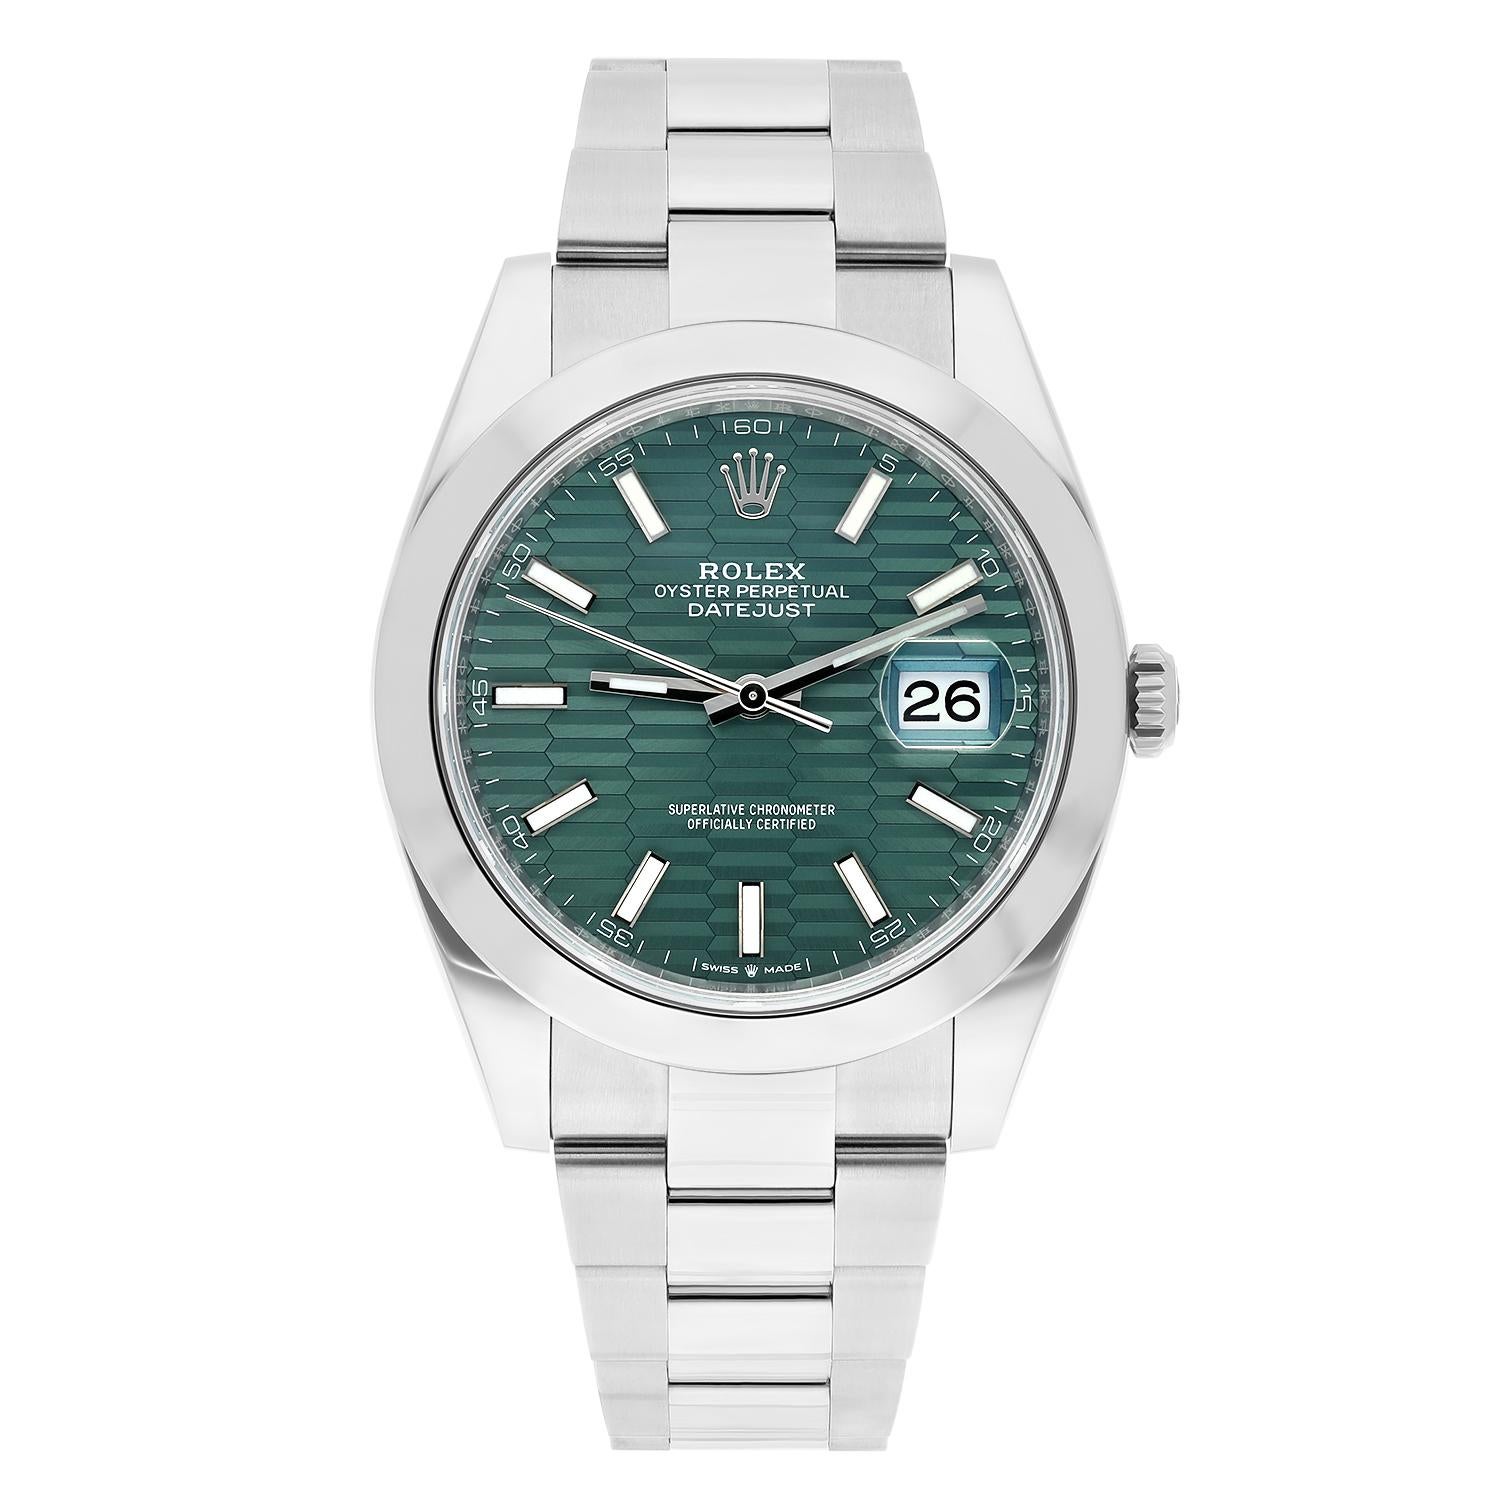 Rolex Datejust 41 Steel Green Motif Index Dial Mens Oyster Watch Unworn 126300

La vente est accompagnée d'une boîte Rolex et des papiers de Rolex. La garantie du fabricant est valable jusqu'en février 2028.